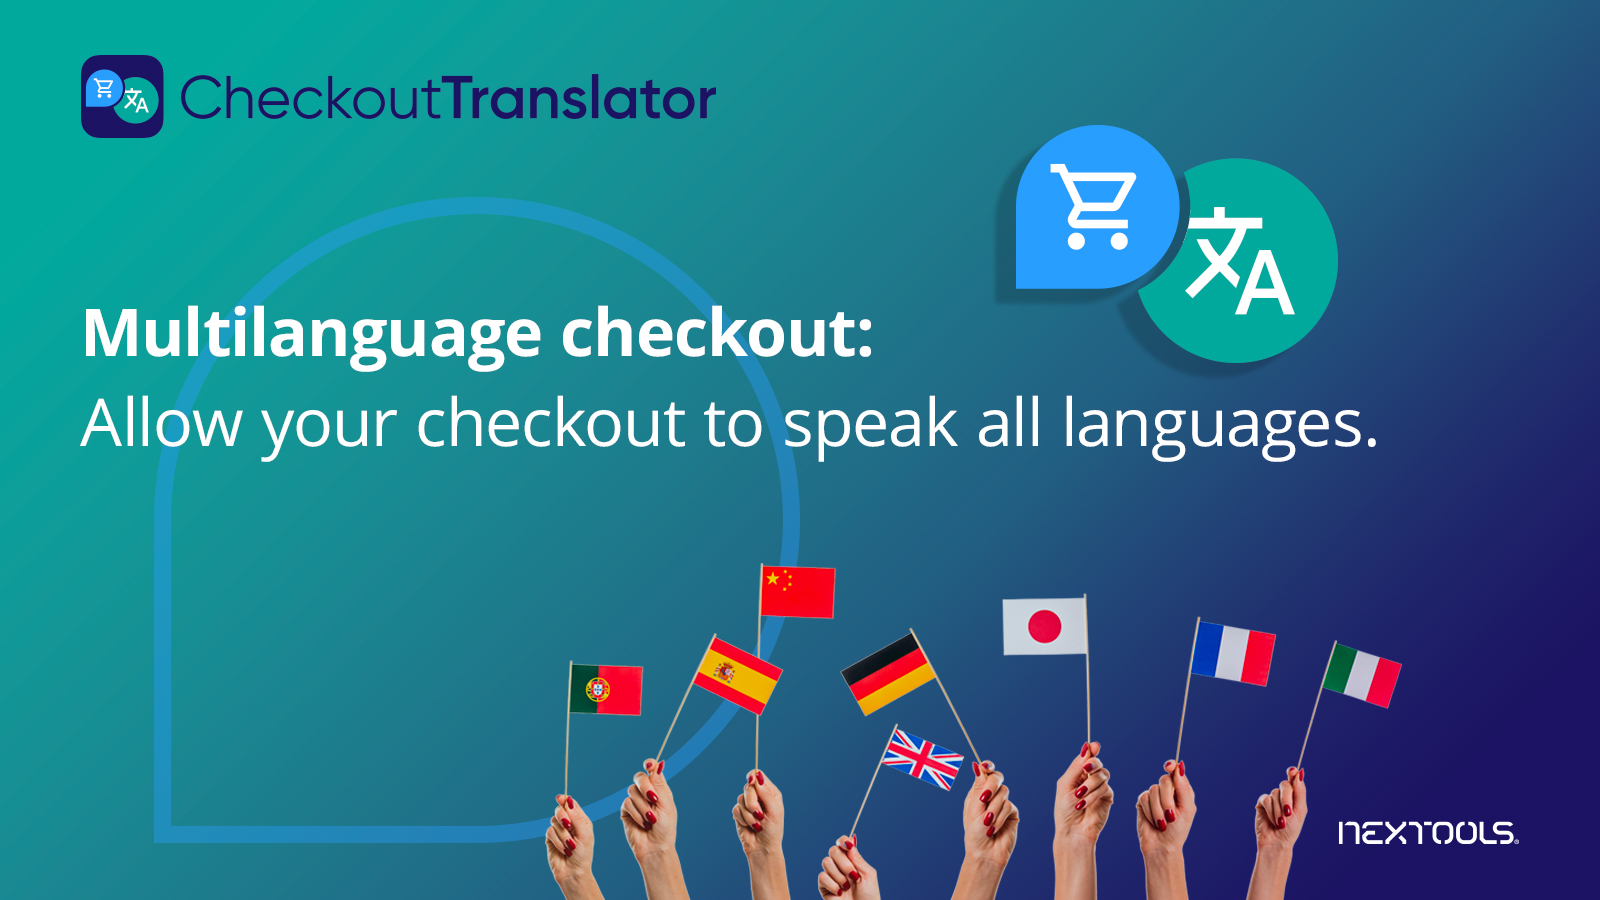 nextools_shopify_checkout_translator